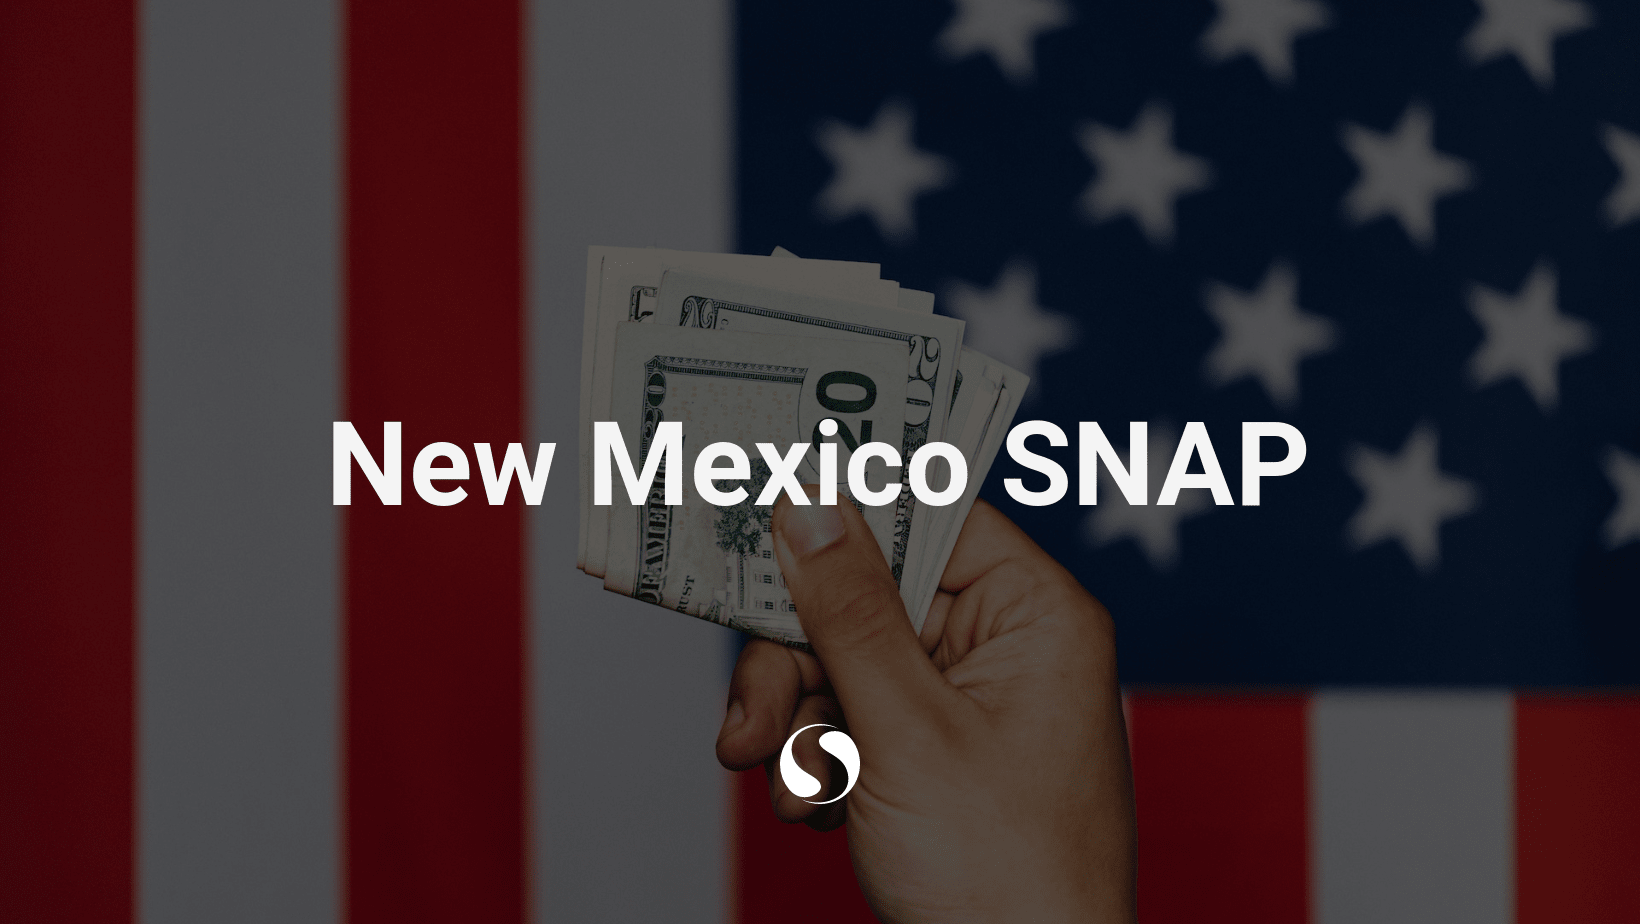 New Mexico SNAP